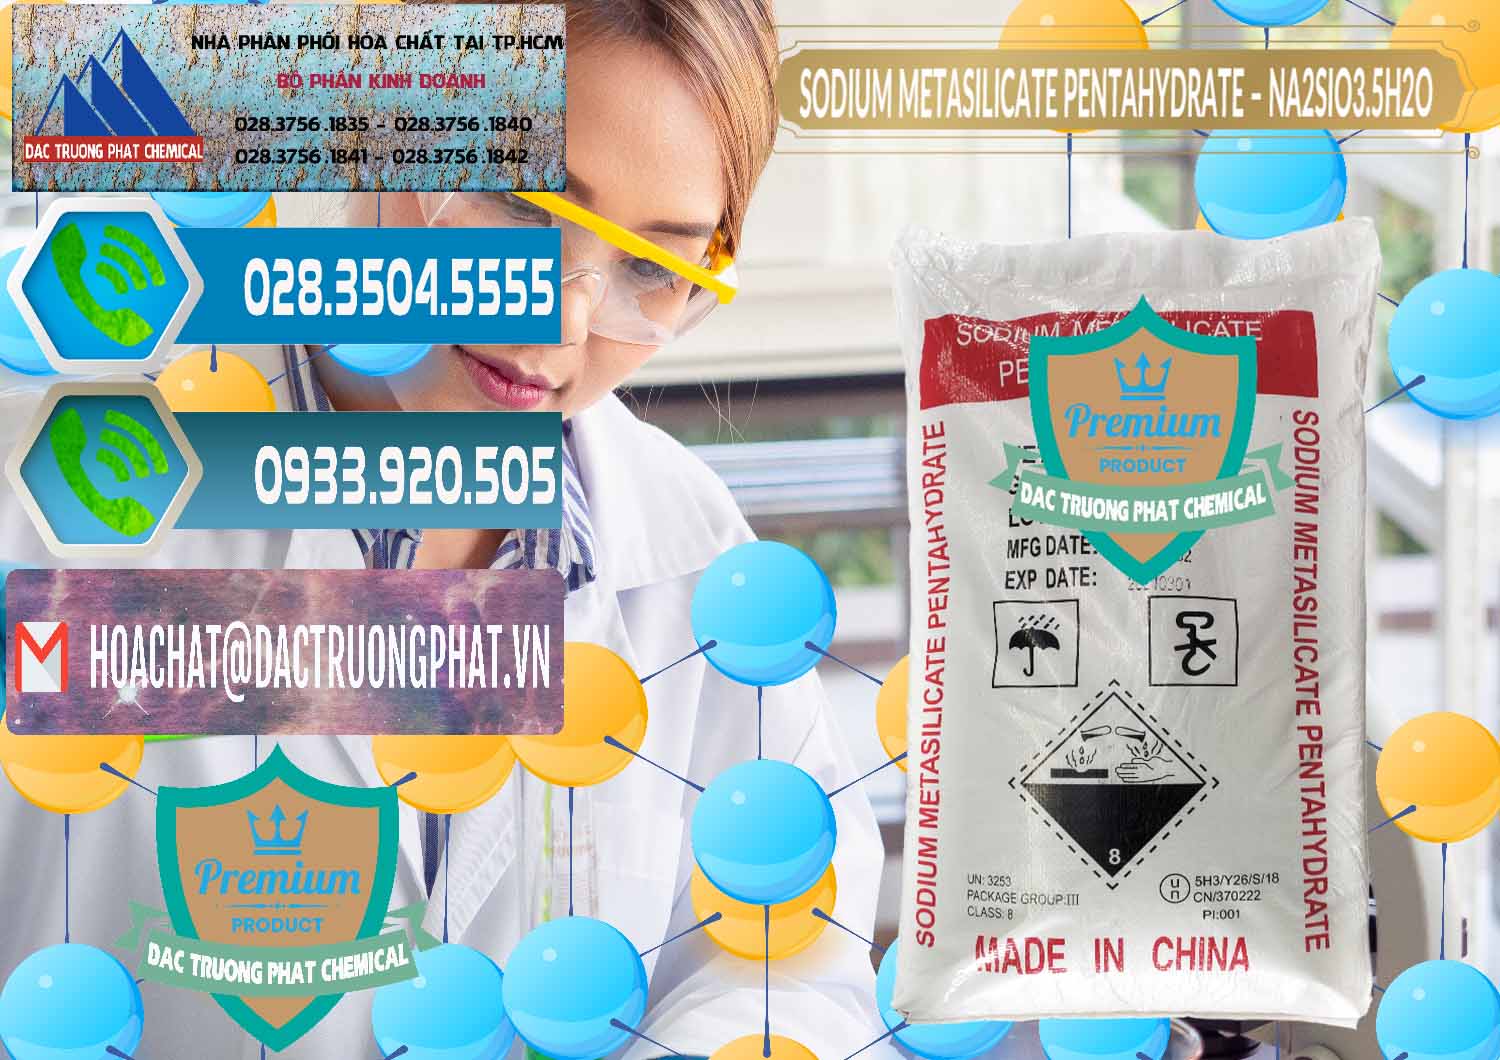 Cty chuyên kinh doanh & bán Sodium Metasilicate Pentahydrate – Silicate Bột Trung Quốc China - 0147 - Cung cấp _ phân phối hóa chất tại TP.HCM - congtyhoachat.net